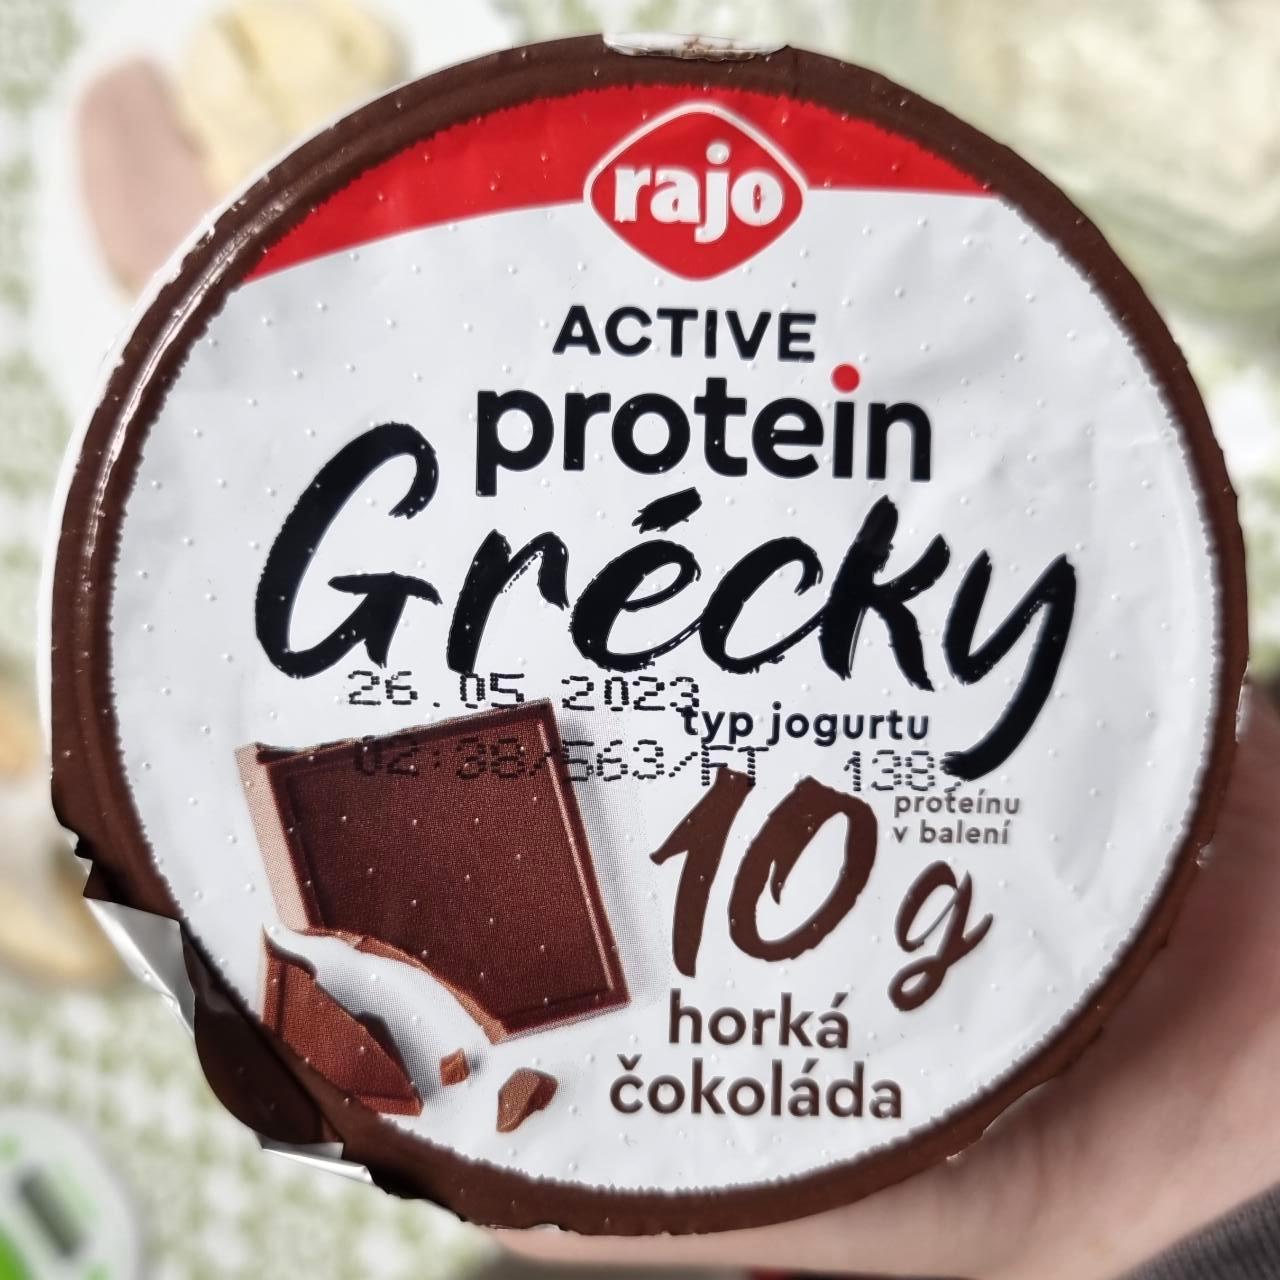 Képek - Active protein Görög joghurt Csokoládés Rajo